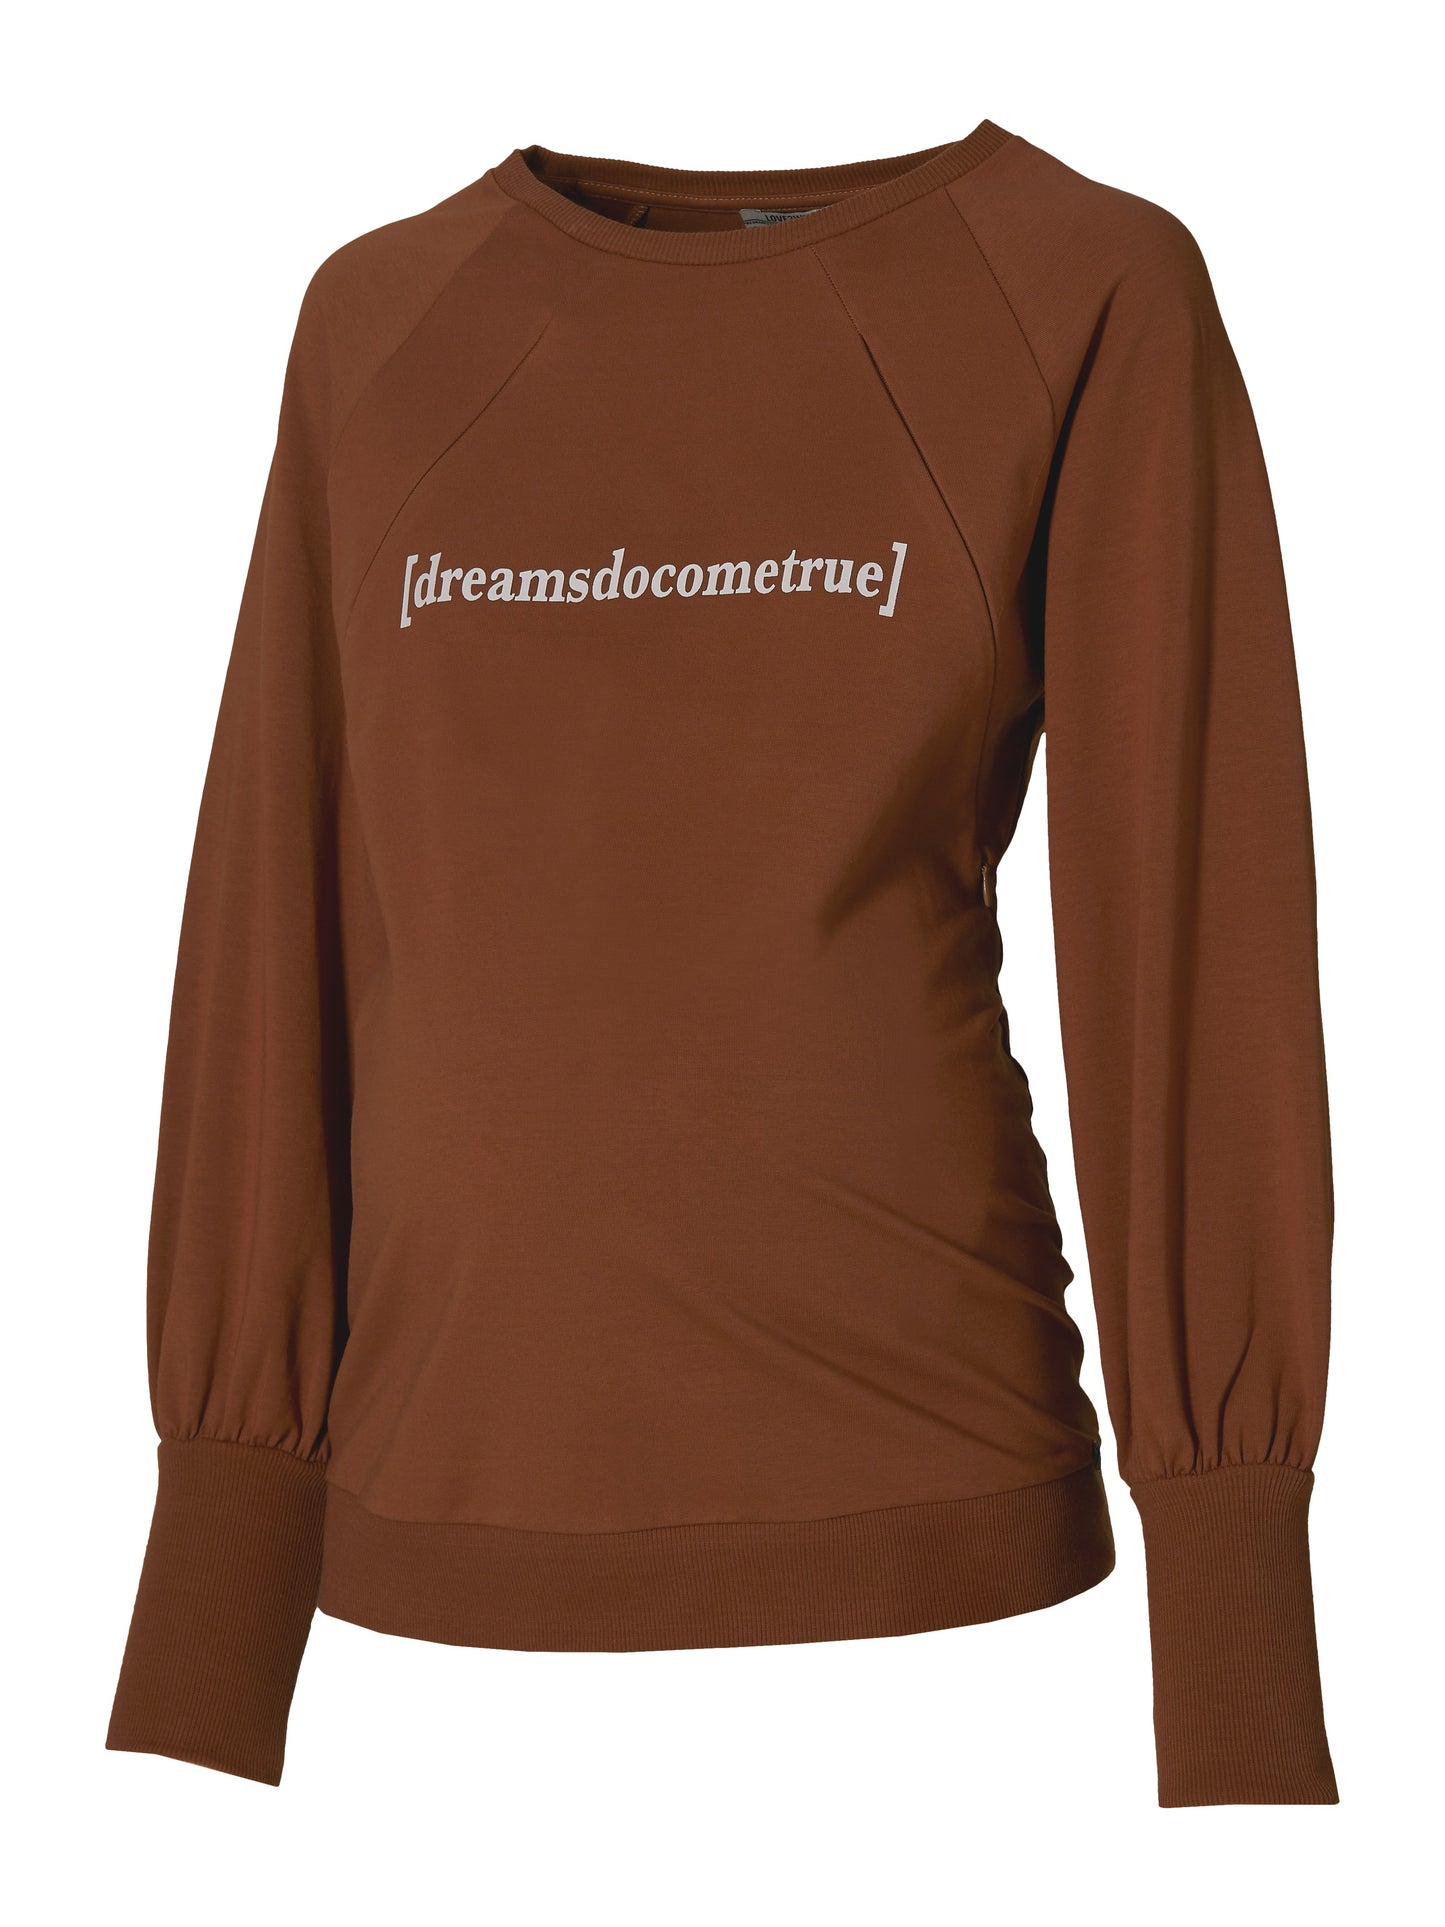 Borstvoedingssweater Dreams (verkrijgbaar in meerdere kleuren)